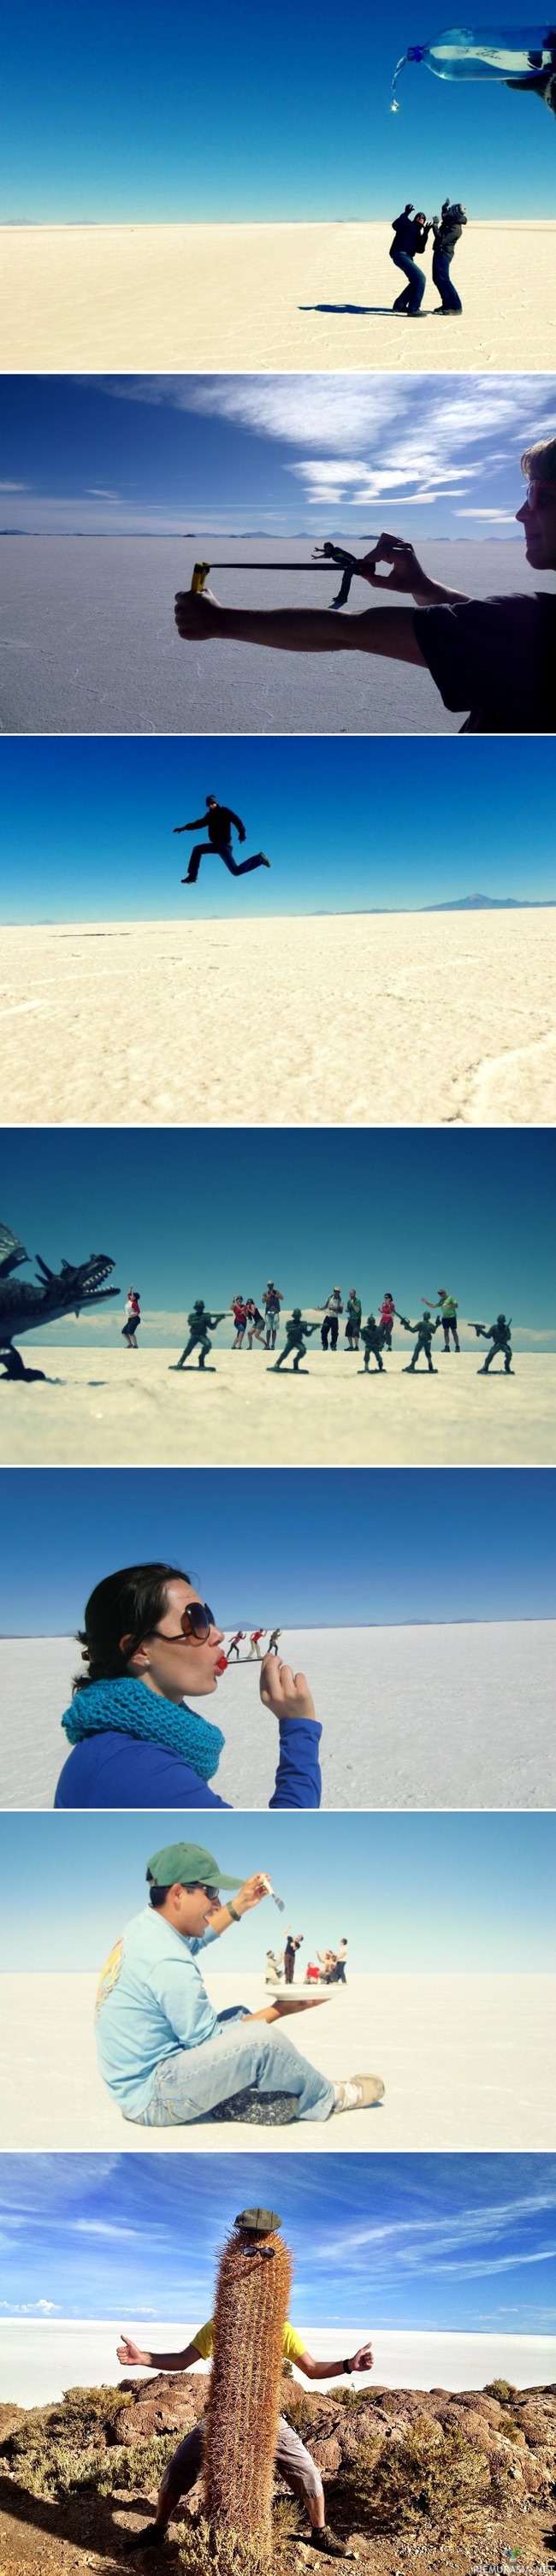 Hassuttelua keskellä ei mitään - Kuvia Salar de Uyunilta joka on maailman suurin suolatasanko ja se sijaitsee Boliviassa Etelä-Amerikassa. Kaikki valokuvat ovat aitoja ja  muokkaamattomia.